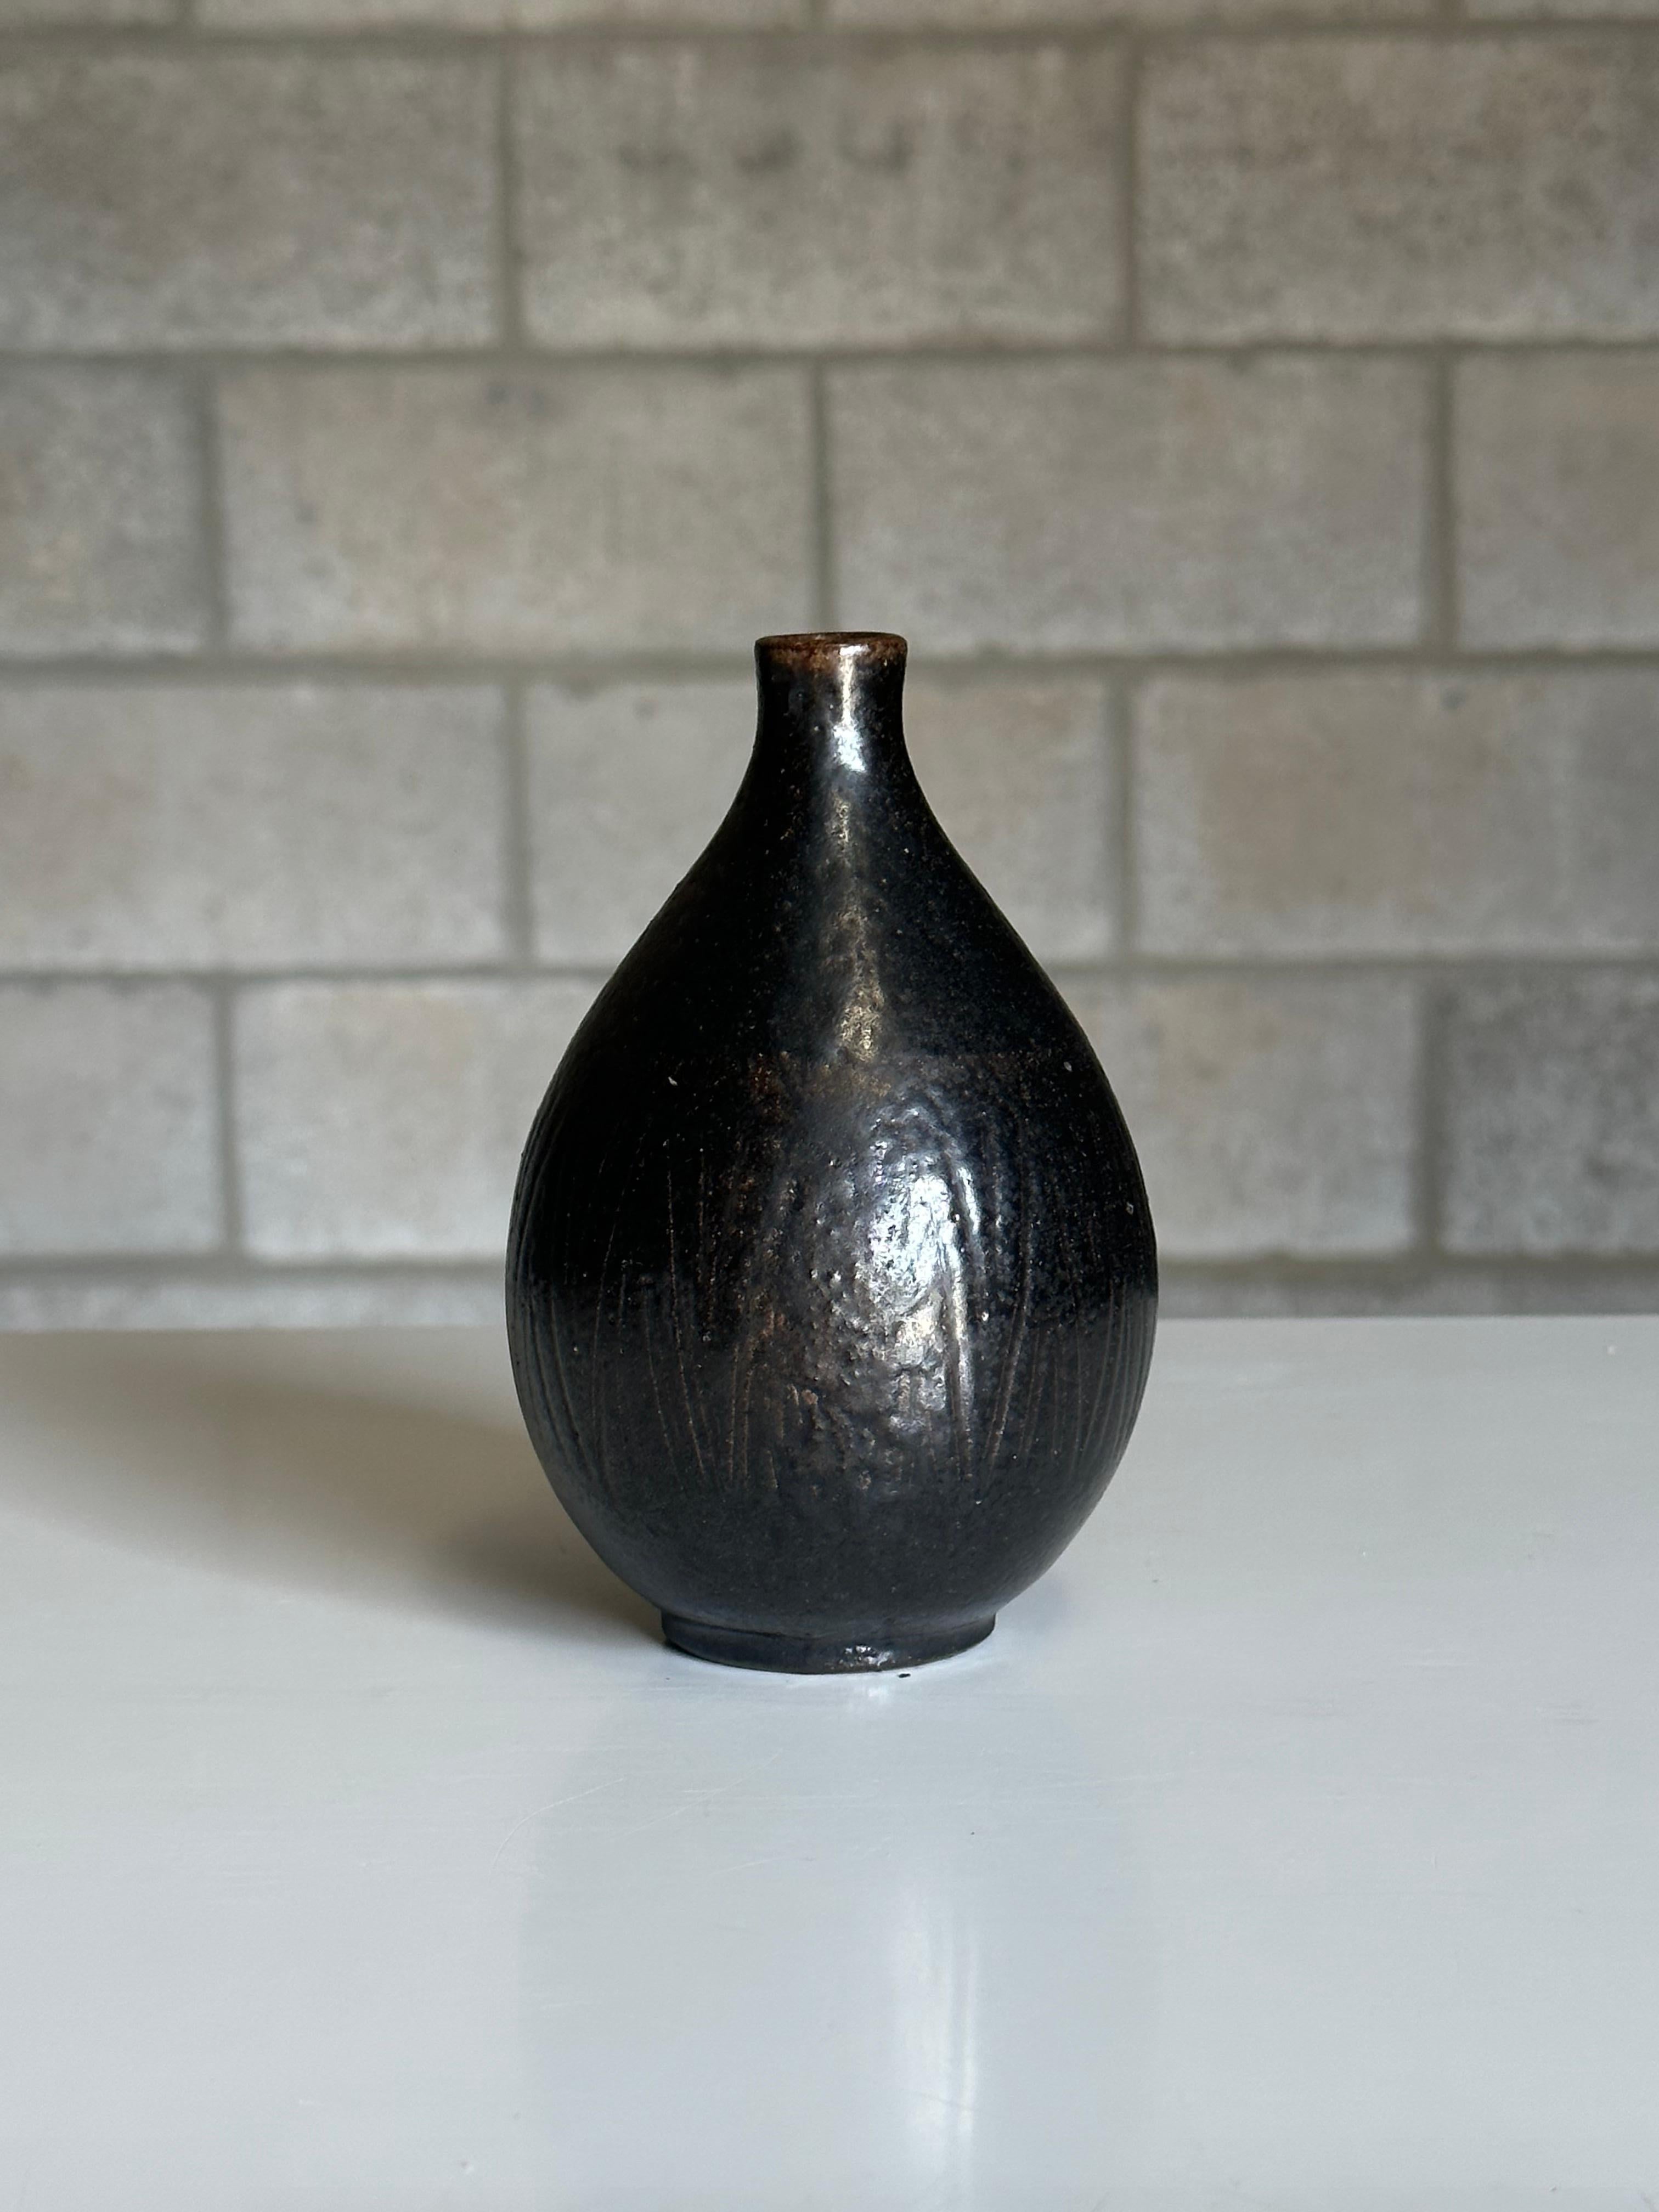 Vase aus Steingut, entworfen von Arthur Andersson für Wallåkra, ca. 1950er Jahre. Mit einer aufregenden schwarzen und braunen Glasur mit Einschnittmuster. Sehr schweres, gut verarbeitetes Stück in einer eleganten Tropfenform. 